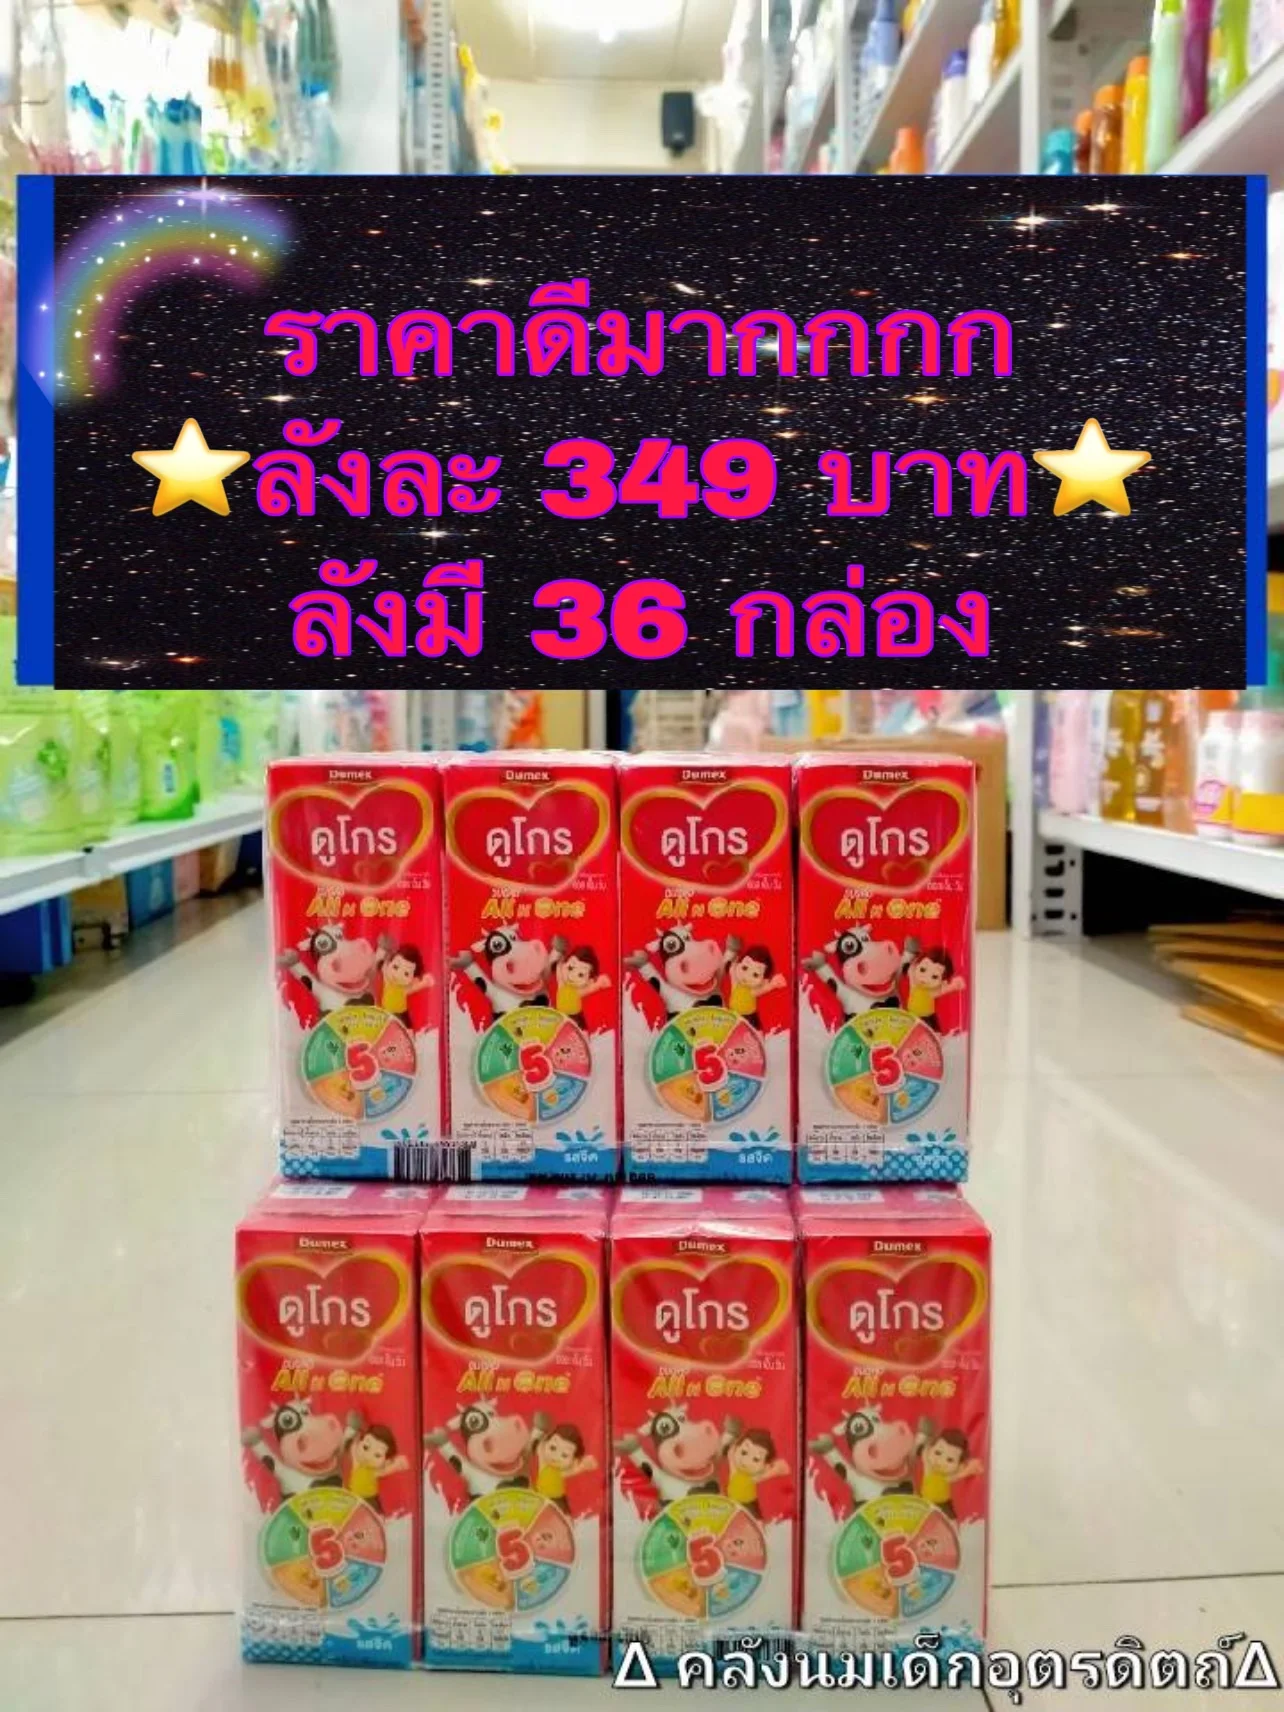 นมUHT ดูโกร ออลอินวัน ขนาด 180ml (ยกลัง 36 กล่อง) ราคาถูกที่สุดในประเทศไทย